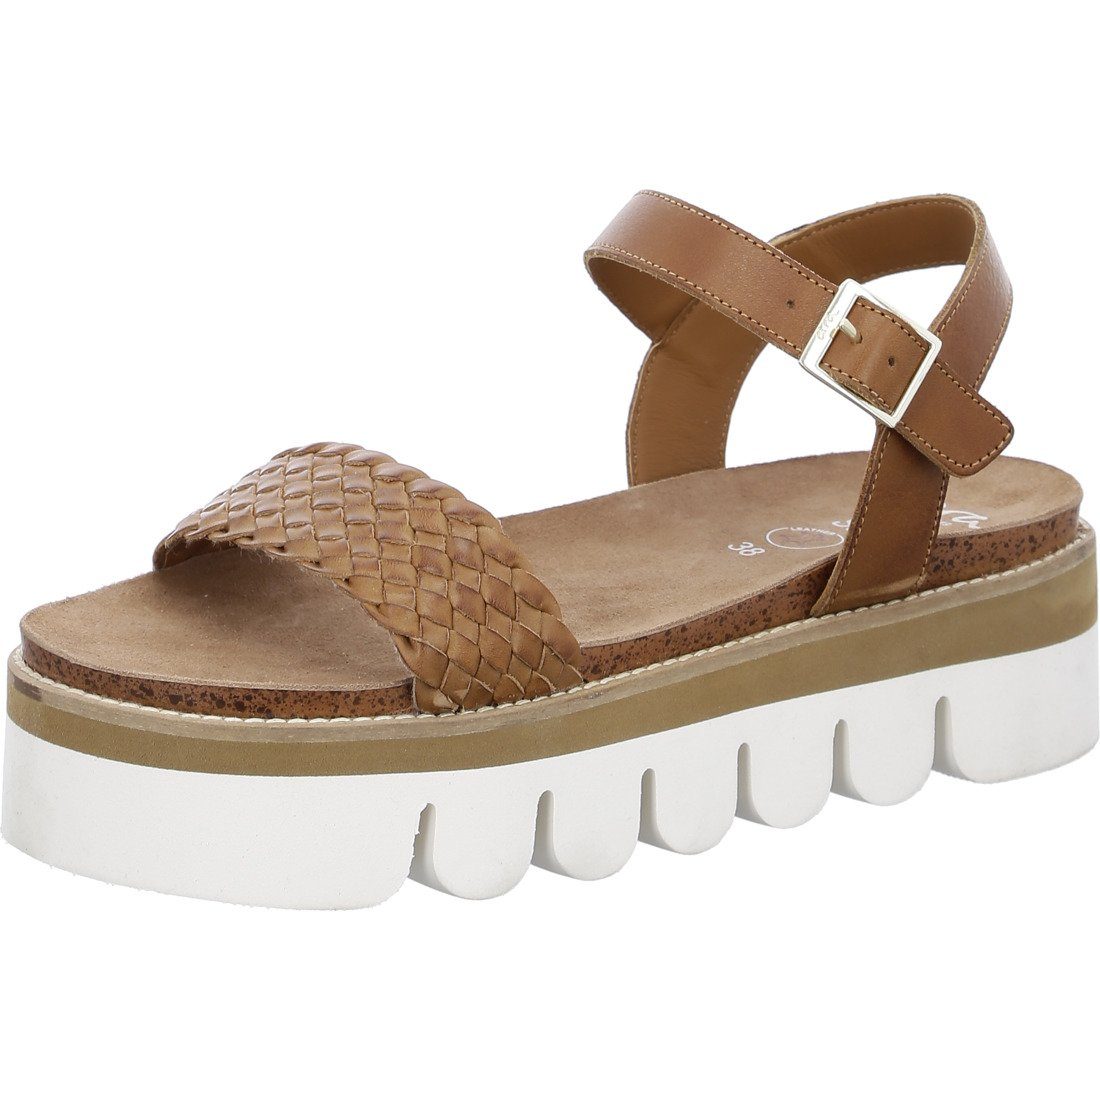 Ara Ara Schuhe, Sandalette Florenz - Glattleder Sandalette braun 044881 | Sandaletten